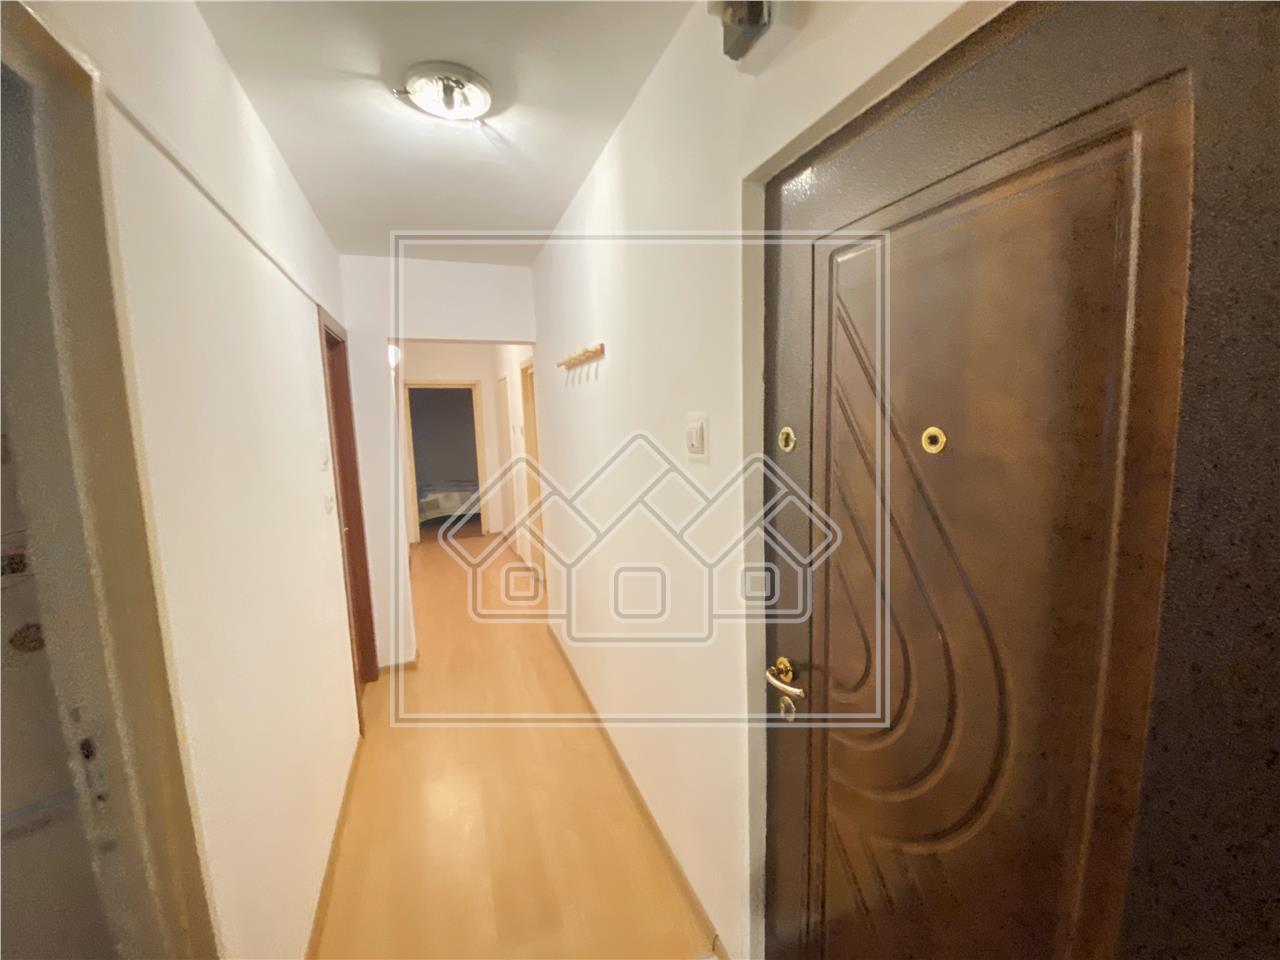 Apartament de vanzare in Sibiu - decomandat - lift - zona V.Aaron